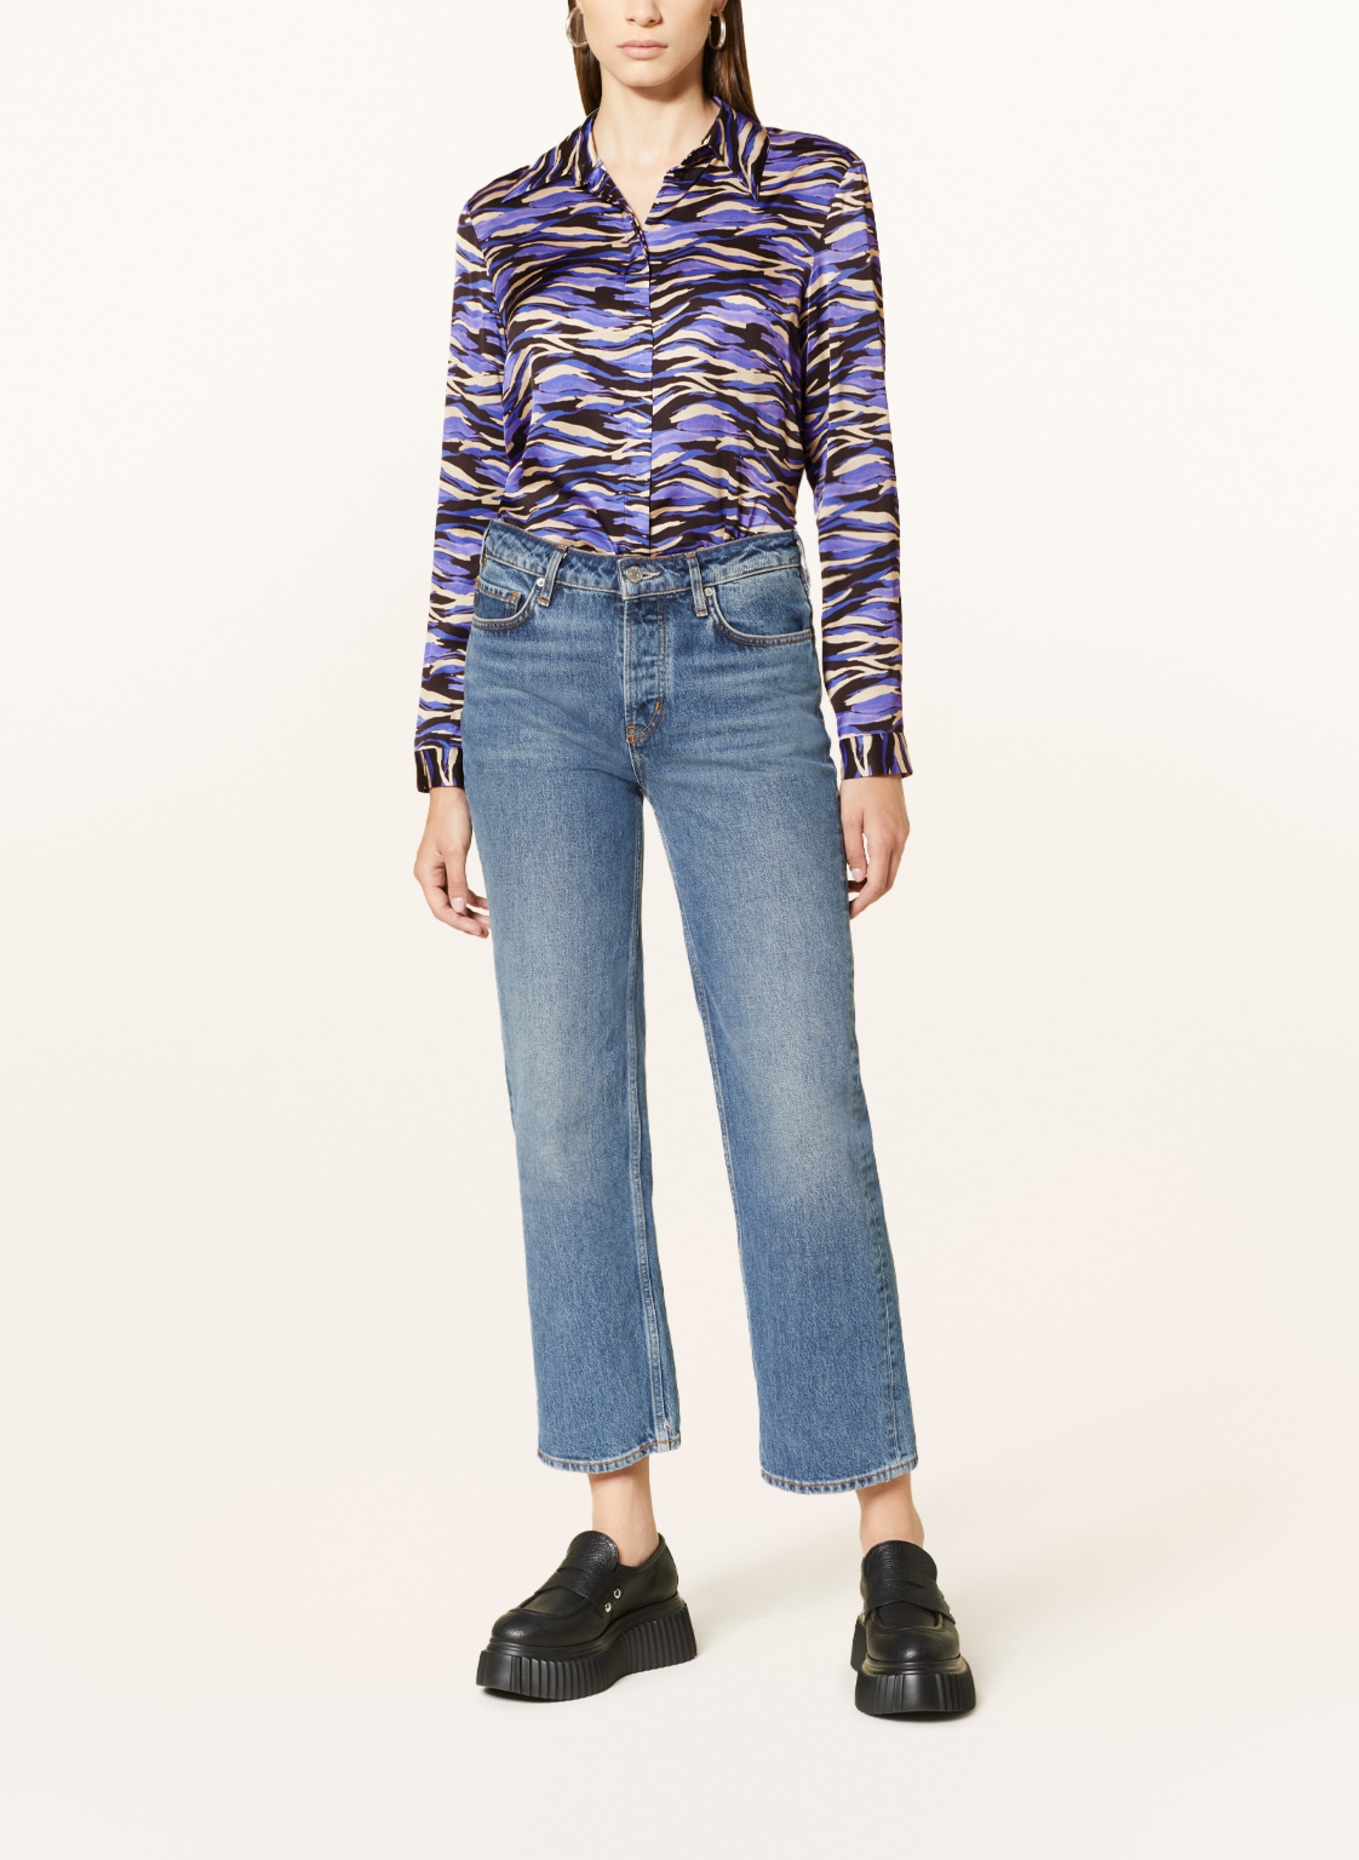 CINQUE Shirt blouse CITOTO, Color: PURPLE/ BLACK/ BEIGE (Image 2)